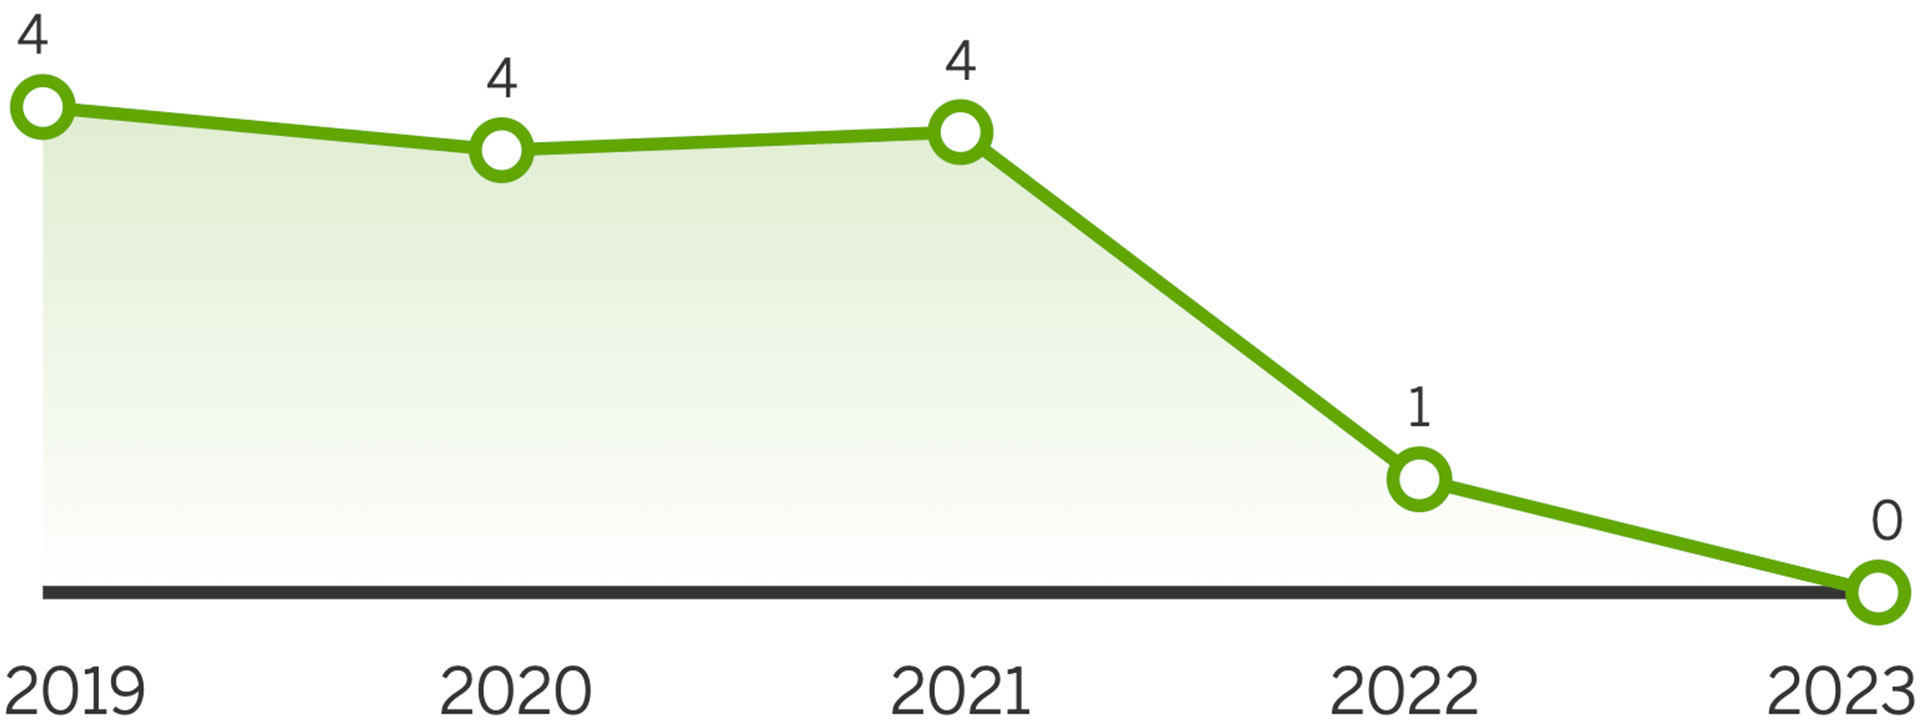 Graafi esittää laskevan käyrän arvoilla 4-0 vuosilta 2019-2023